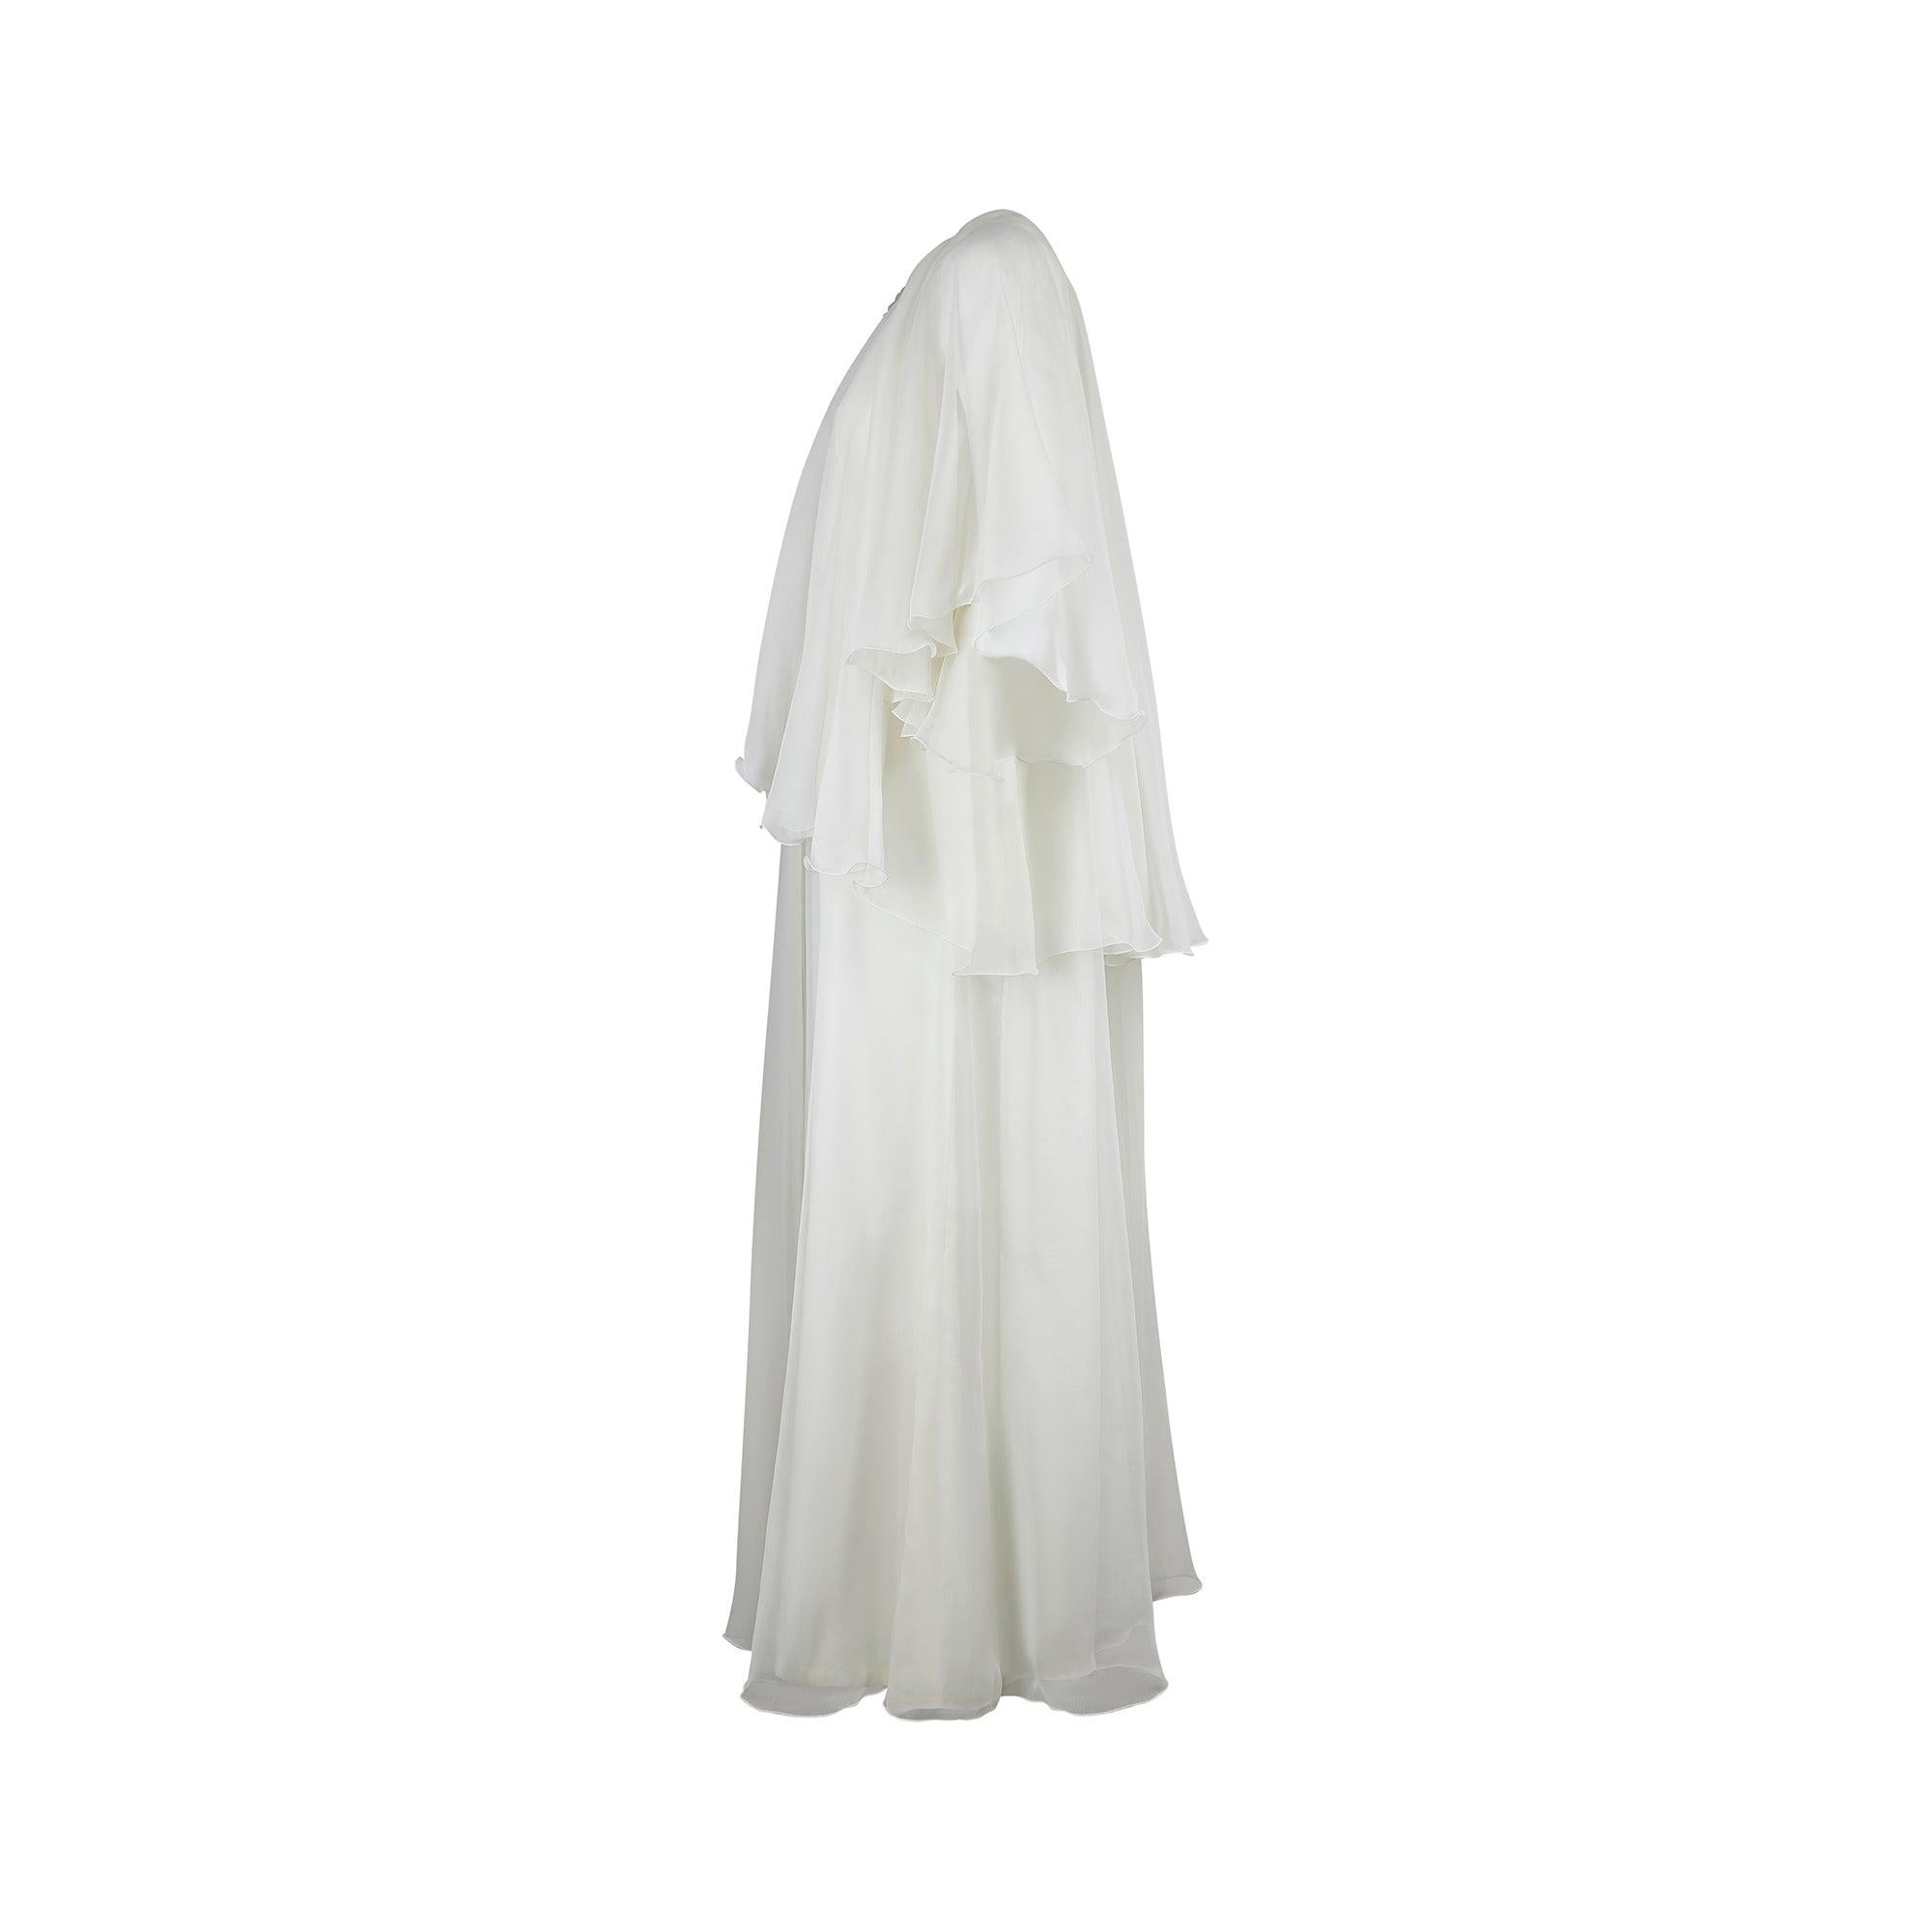 Cette robe de mariée éthérée date du milieu des années 1970, avec sa construction en gradins, ses épaules coiffées et ses couches de georgette crème pâle mousseuse. La jupe est formée d'une doublure en acétate crème surmontée d'une couche